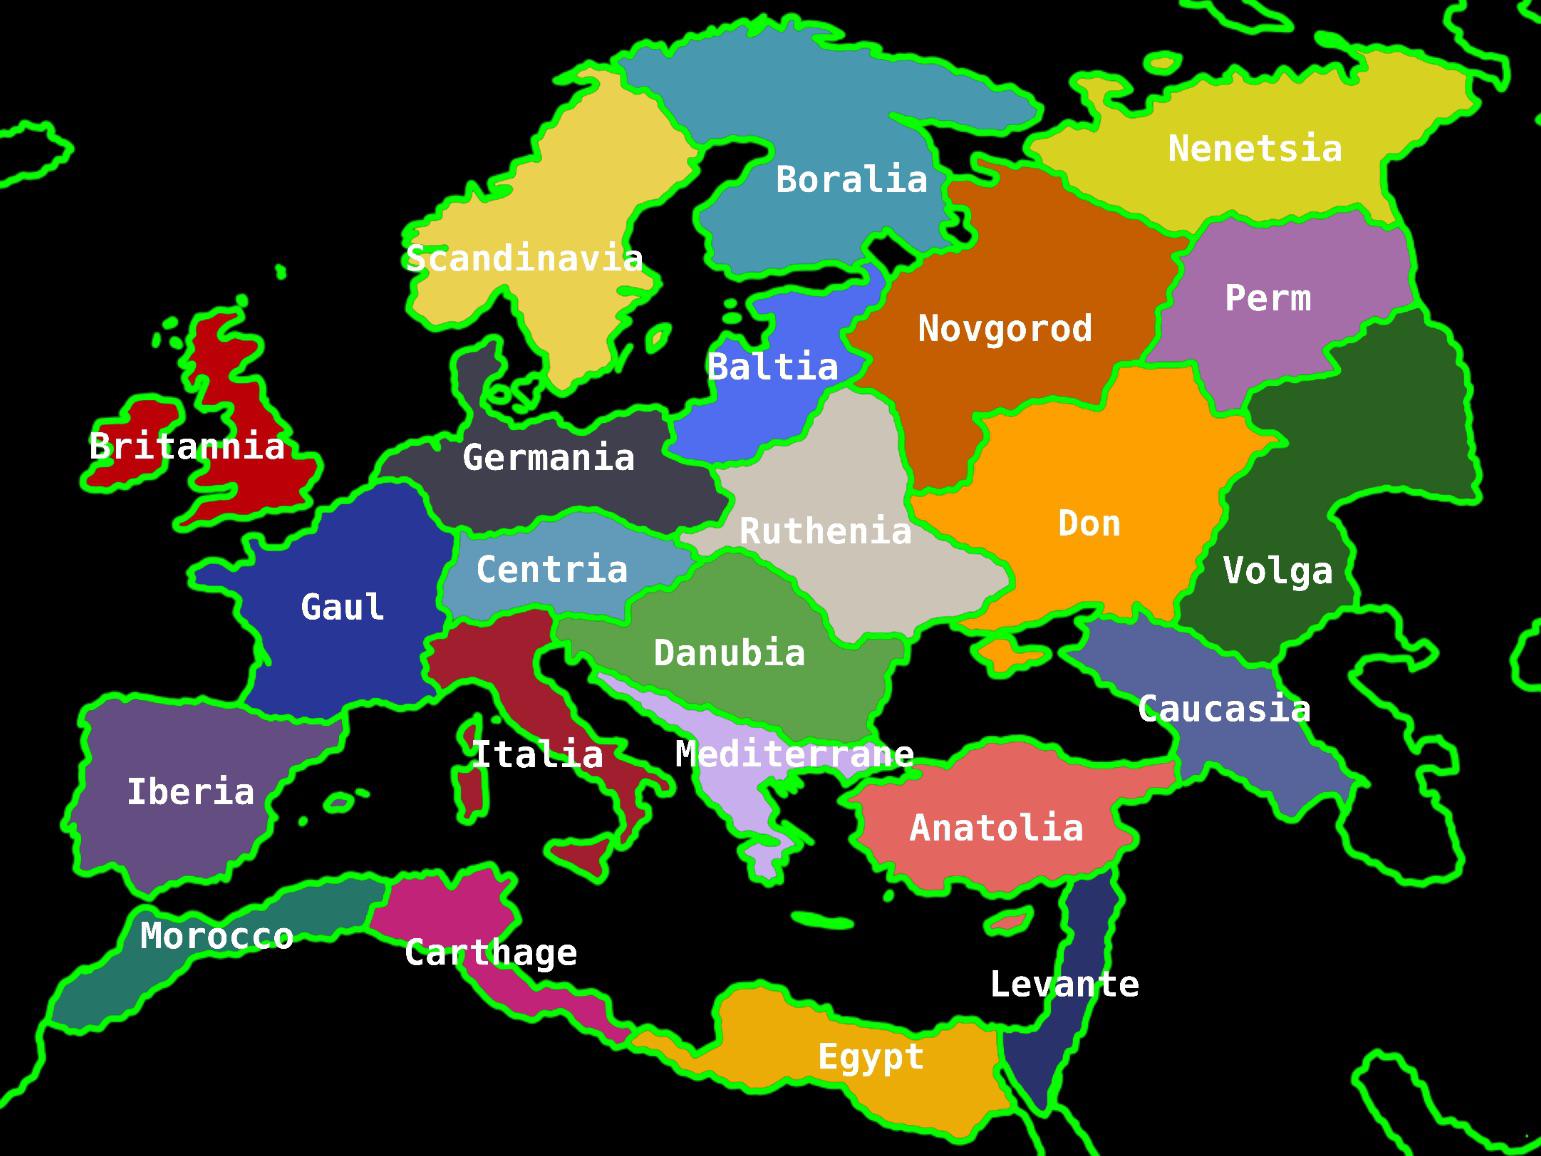 Podział Europy na regiony pod względem geograficznym